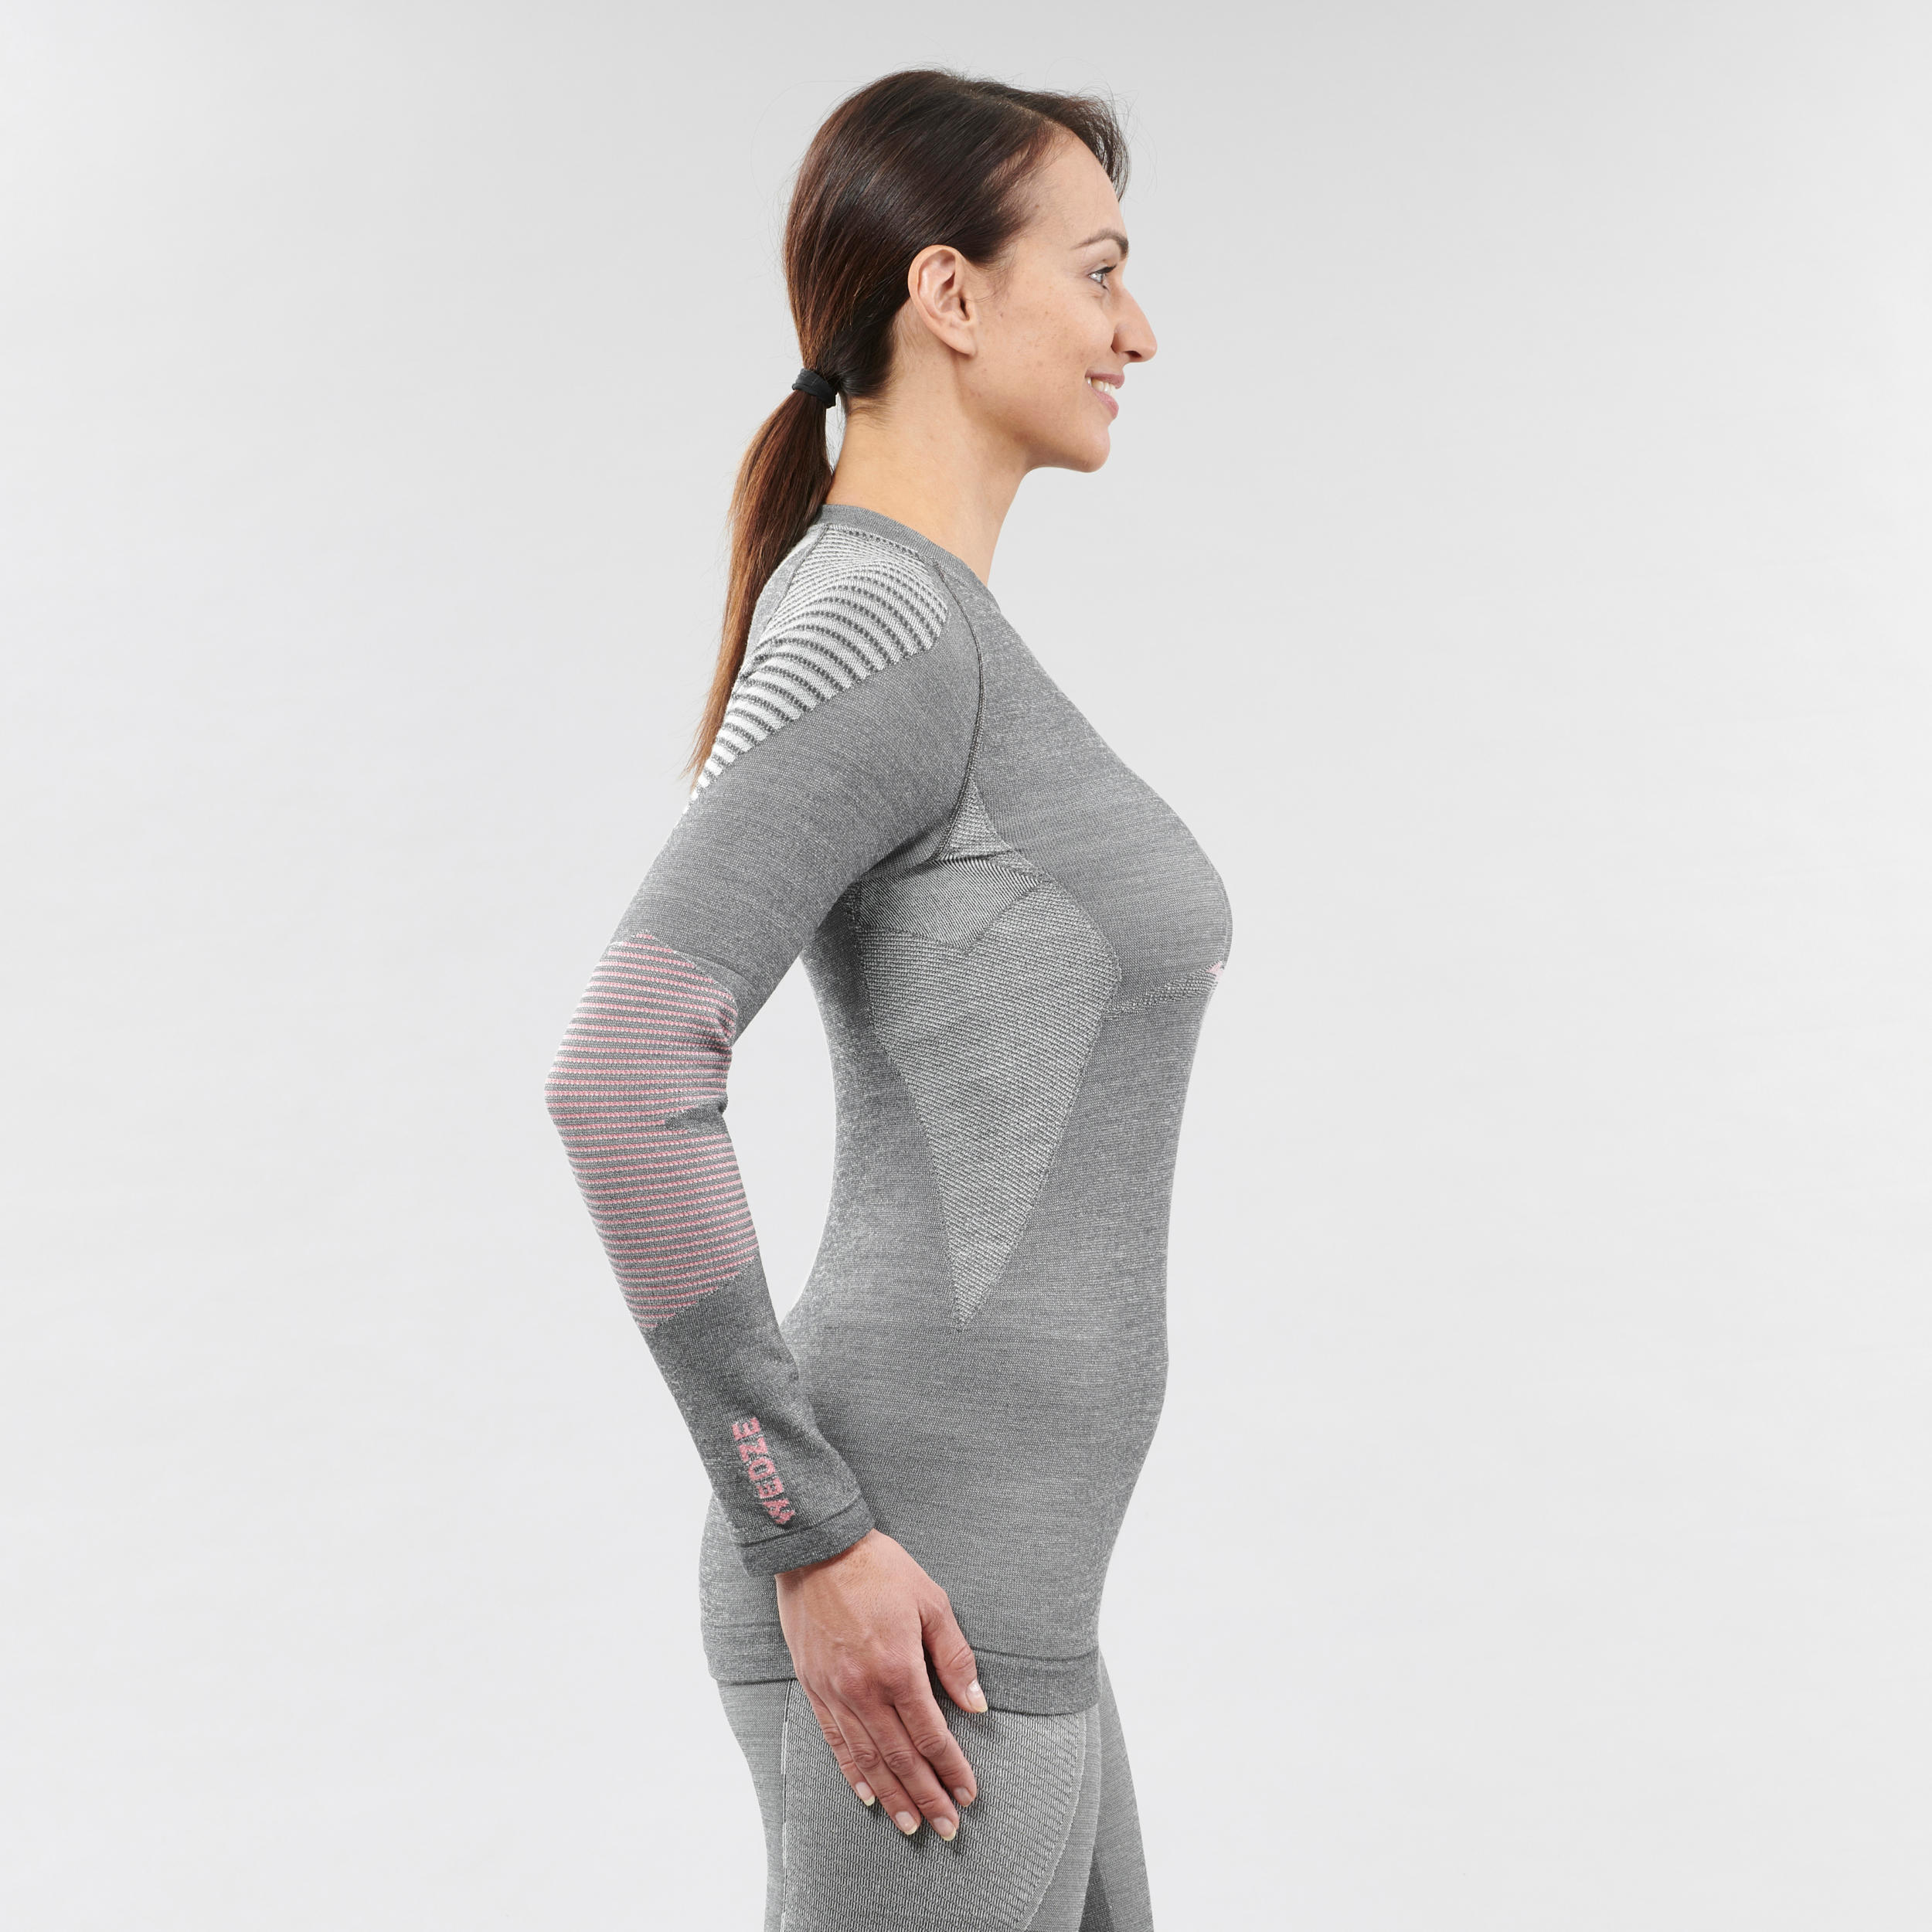 Women's 900 Merino wool seamless thermal base layer ski top - grey/pink 3/5